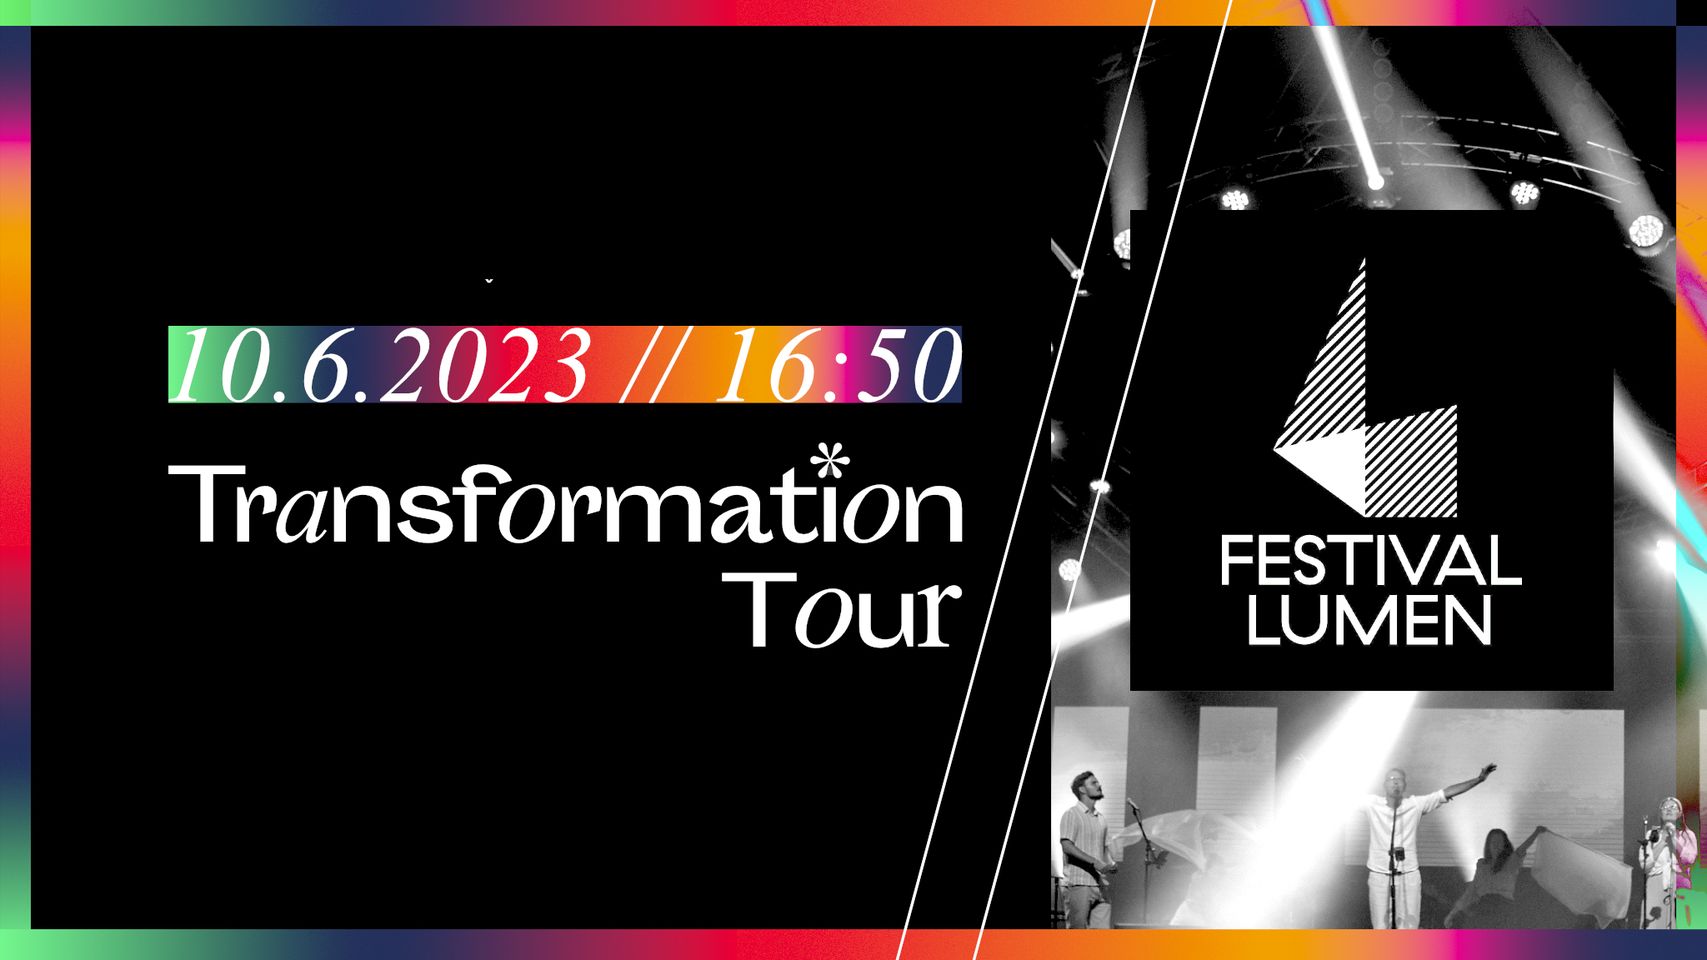 TRANSFORMATION TOUR '23 | Festival LUMEN Trnava Radnica